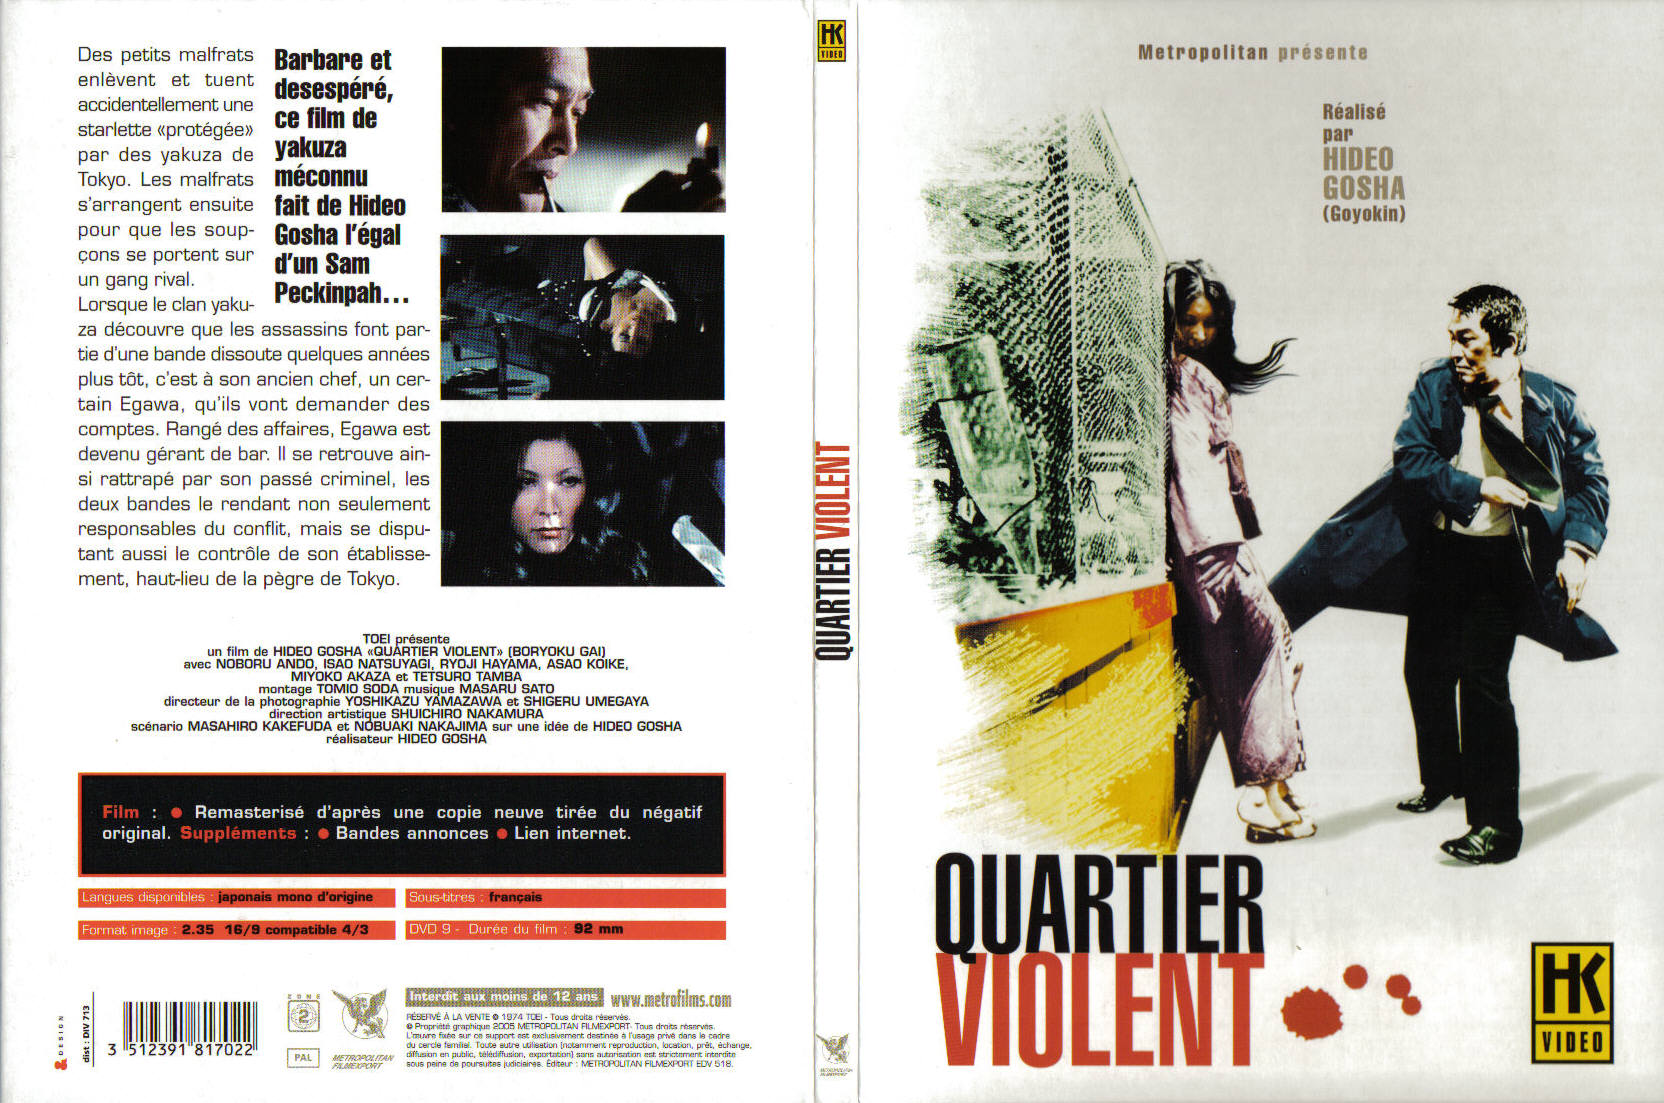 Jaquette DVD Quartier violent